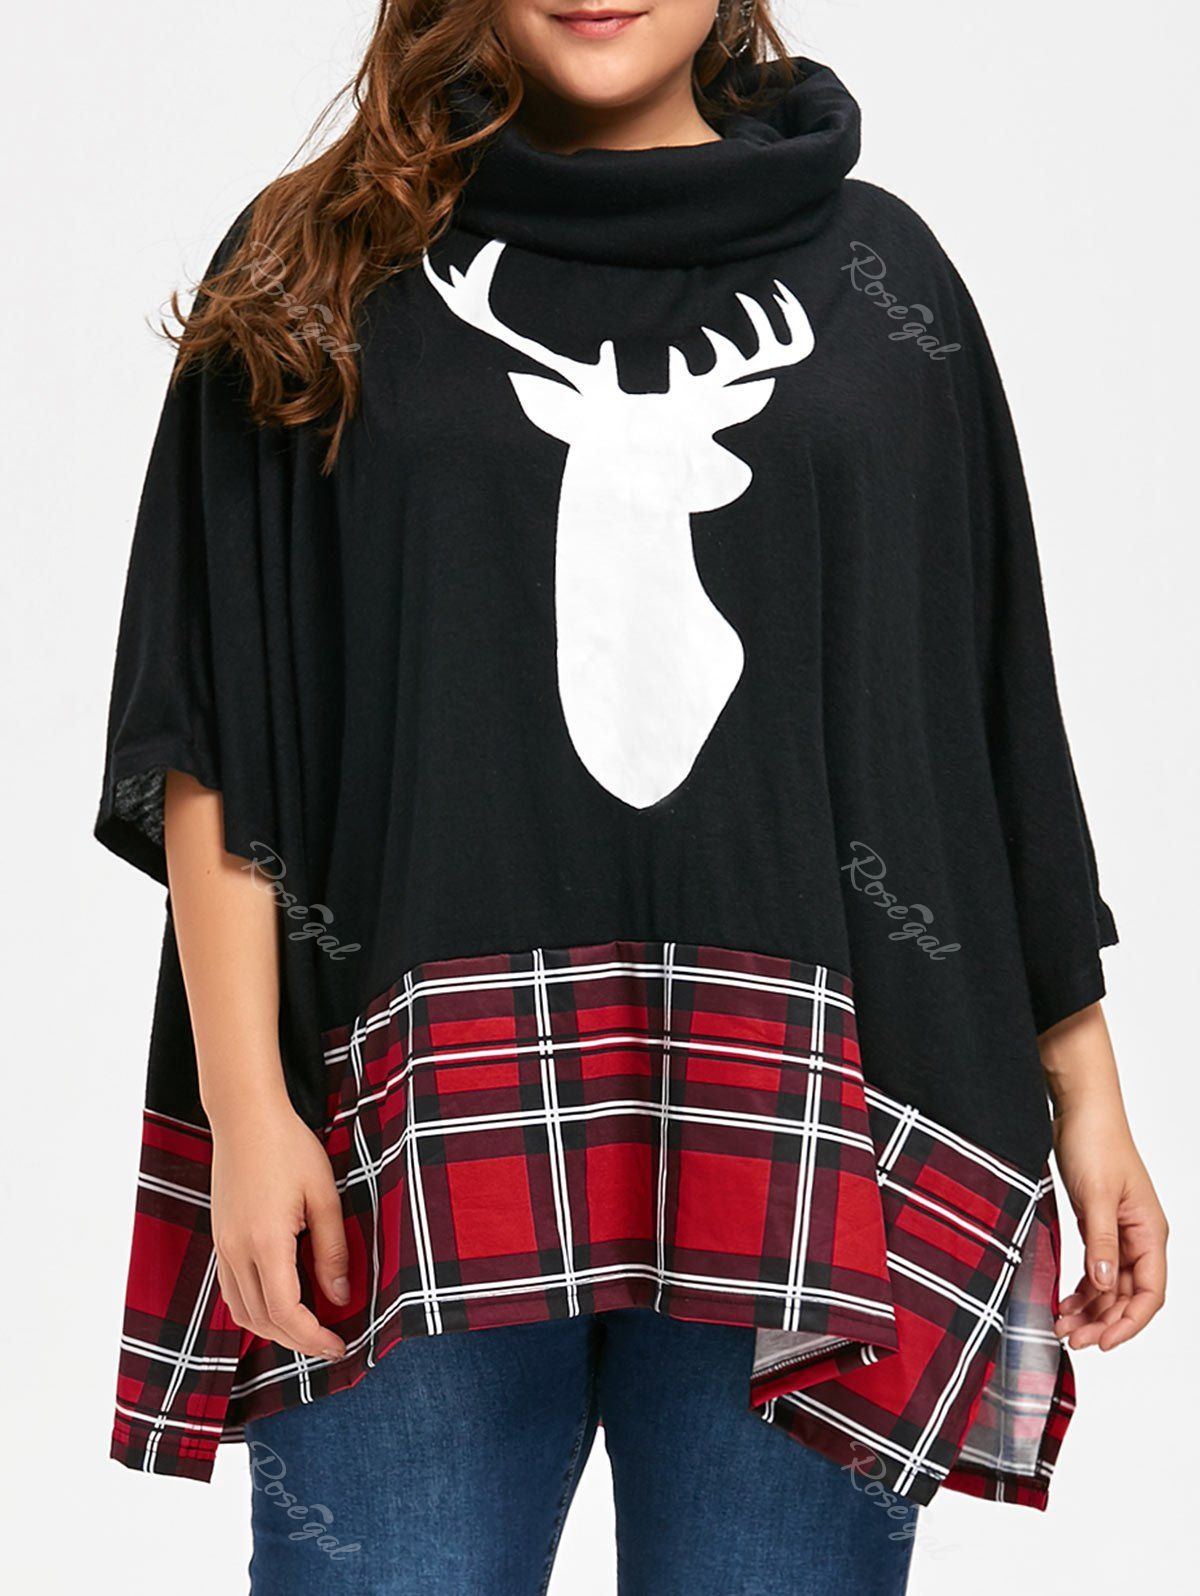 

Christmas Reindeer Print Plus Size Sweatshirt, Black